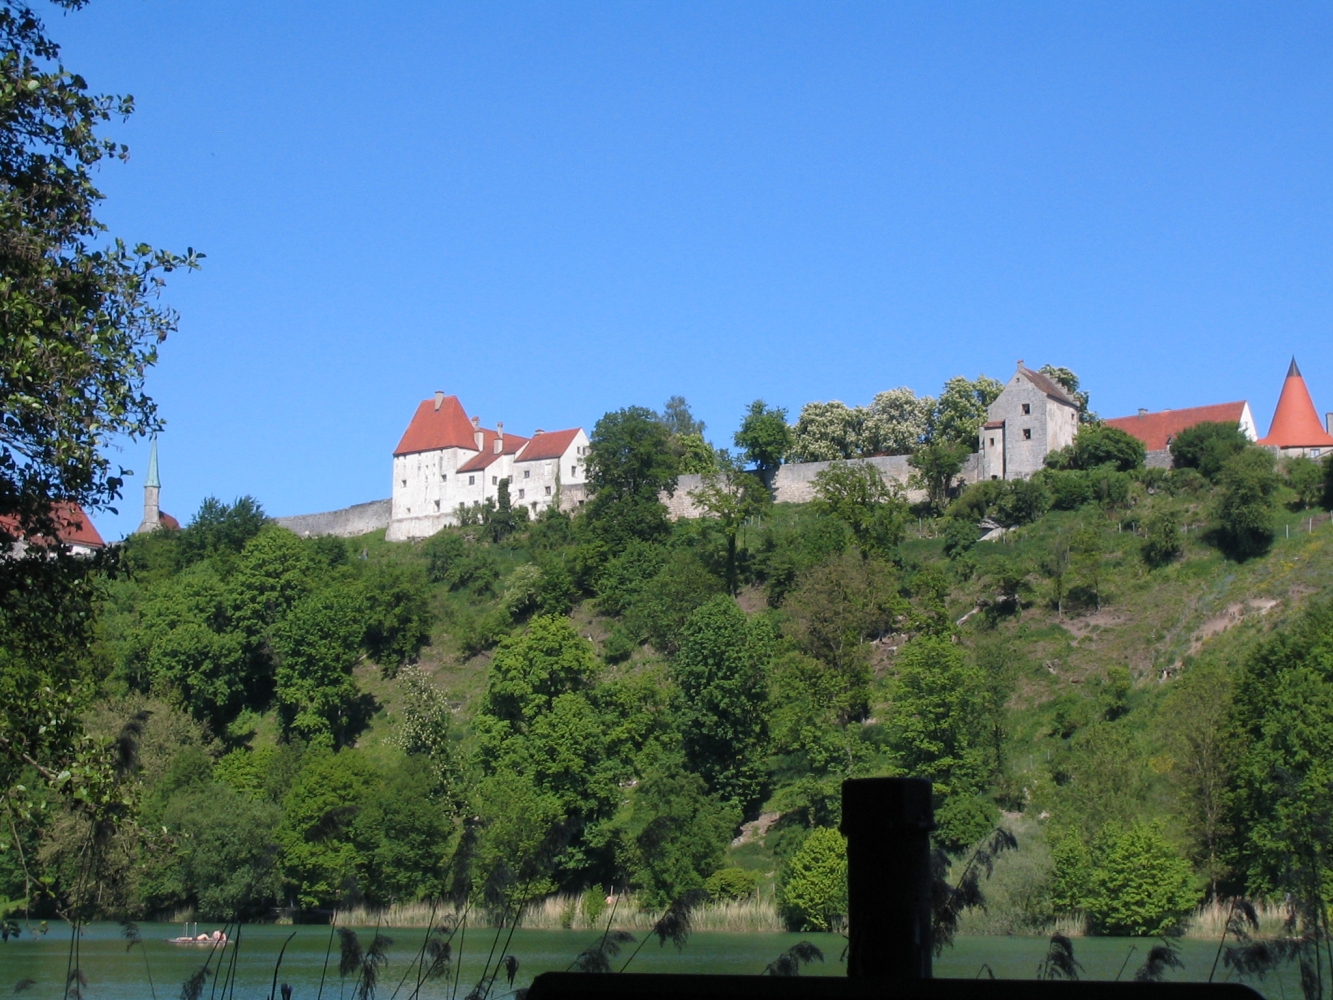 Bestens erhalten - die Burganlage in Burghausen